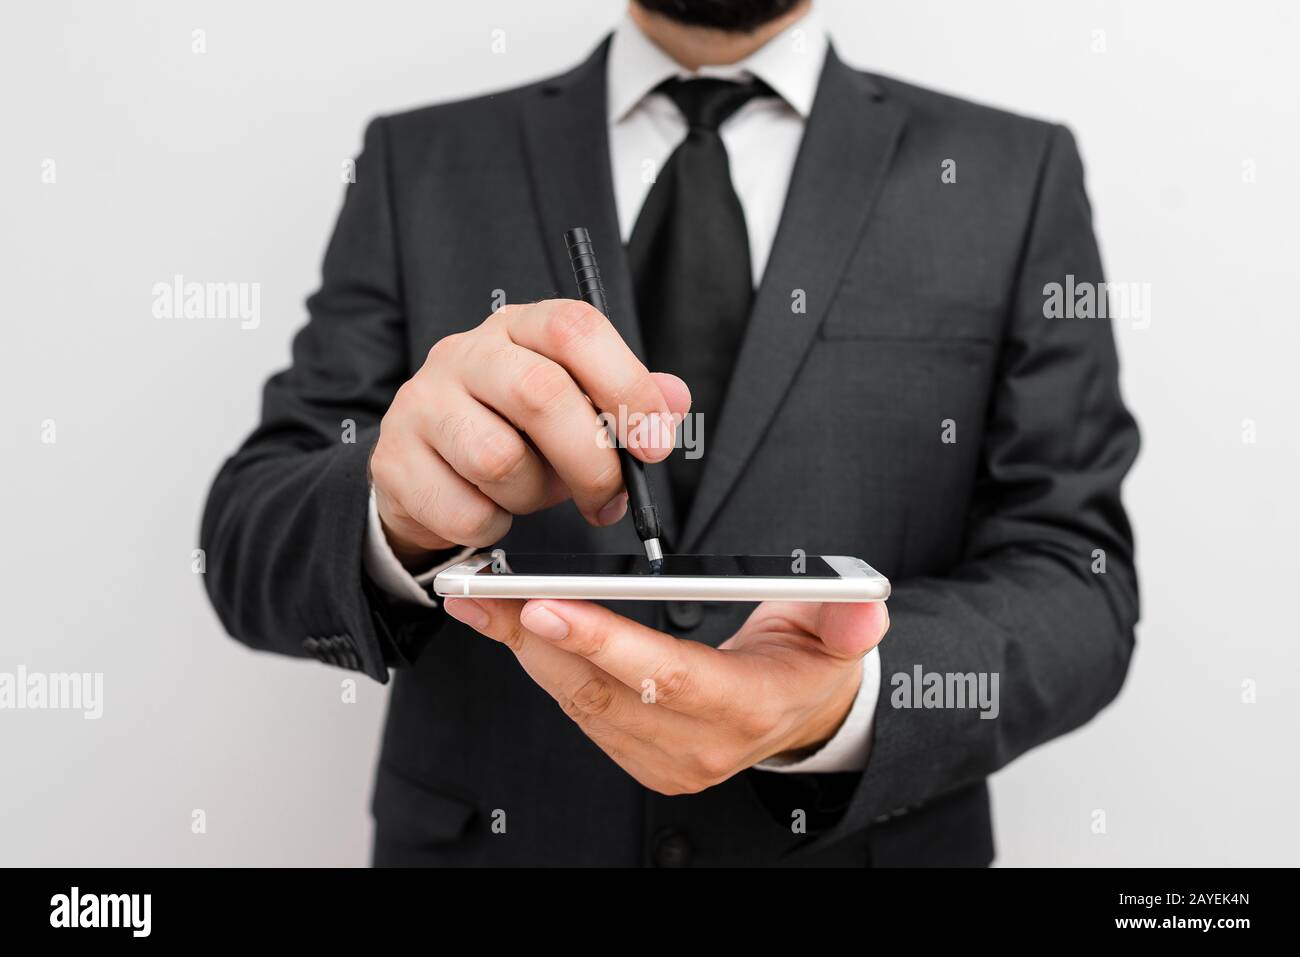 Homme avec barbe porter des vêtements de travail formels tenir l'appareil de smartphone haute technologie. Homme vêtu d'un costume de travail et d'une tenue de cravate Banque D'Images